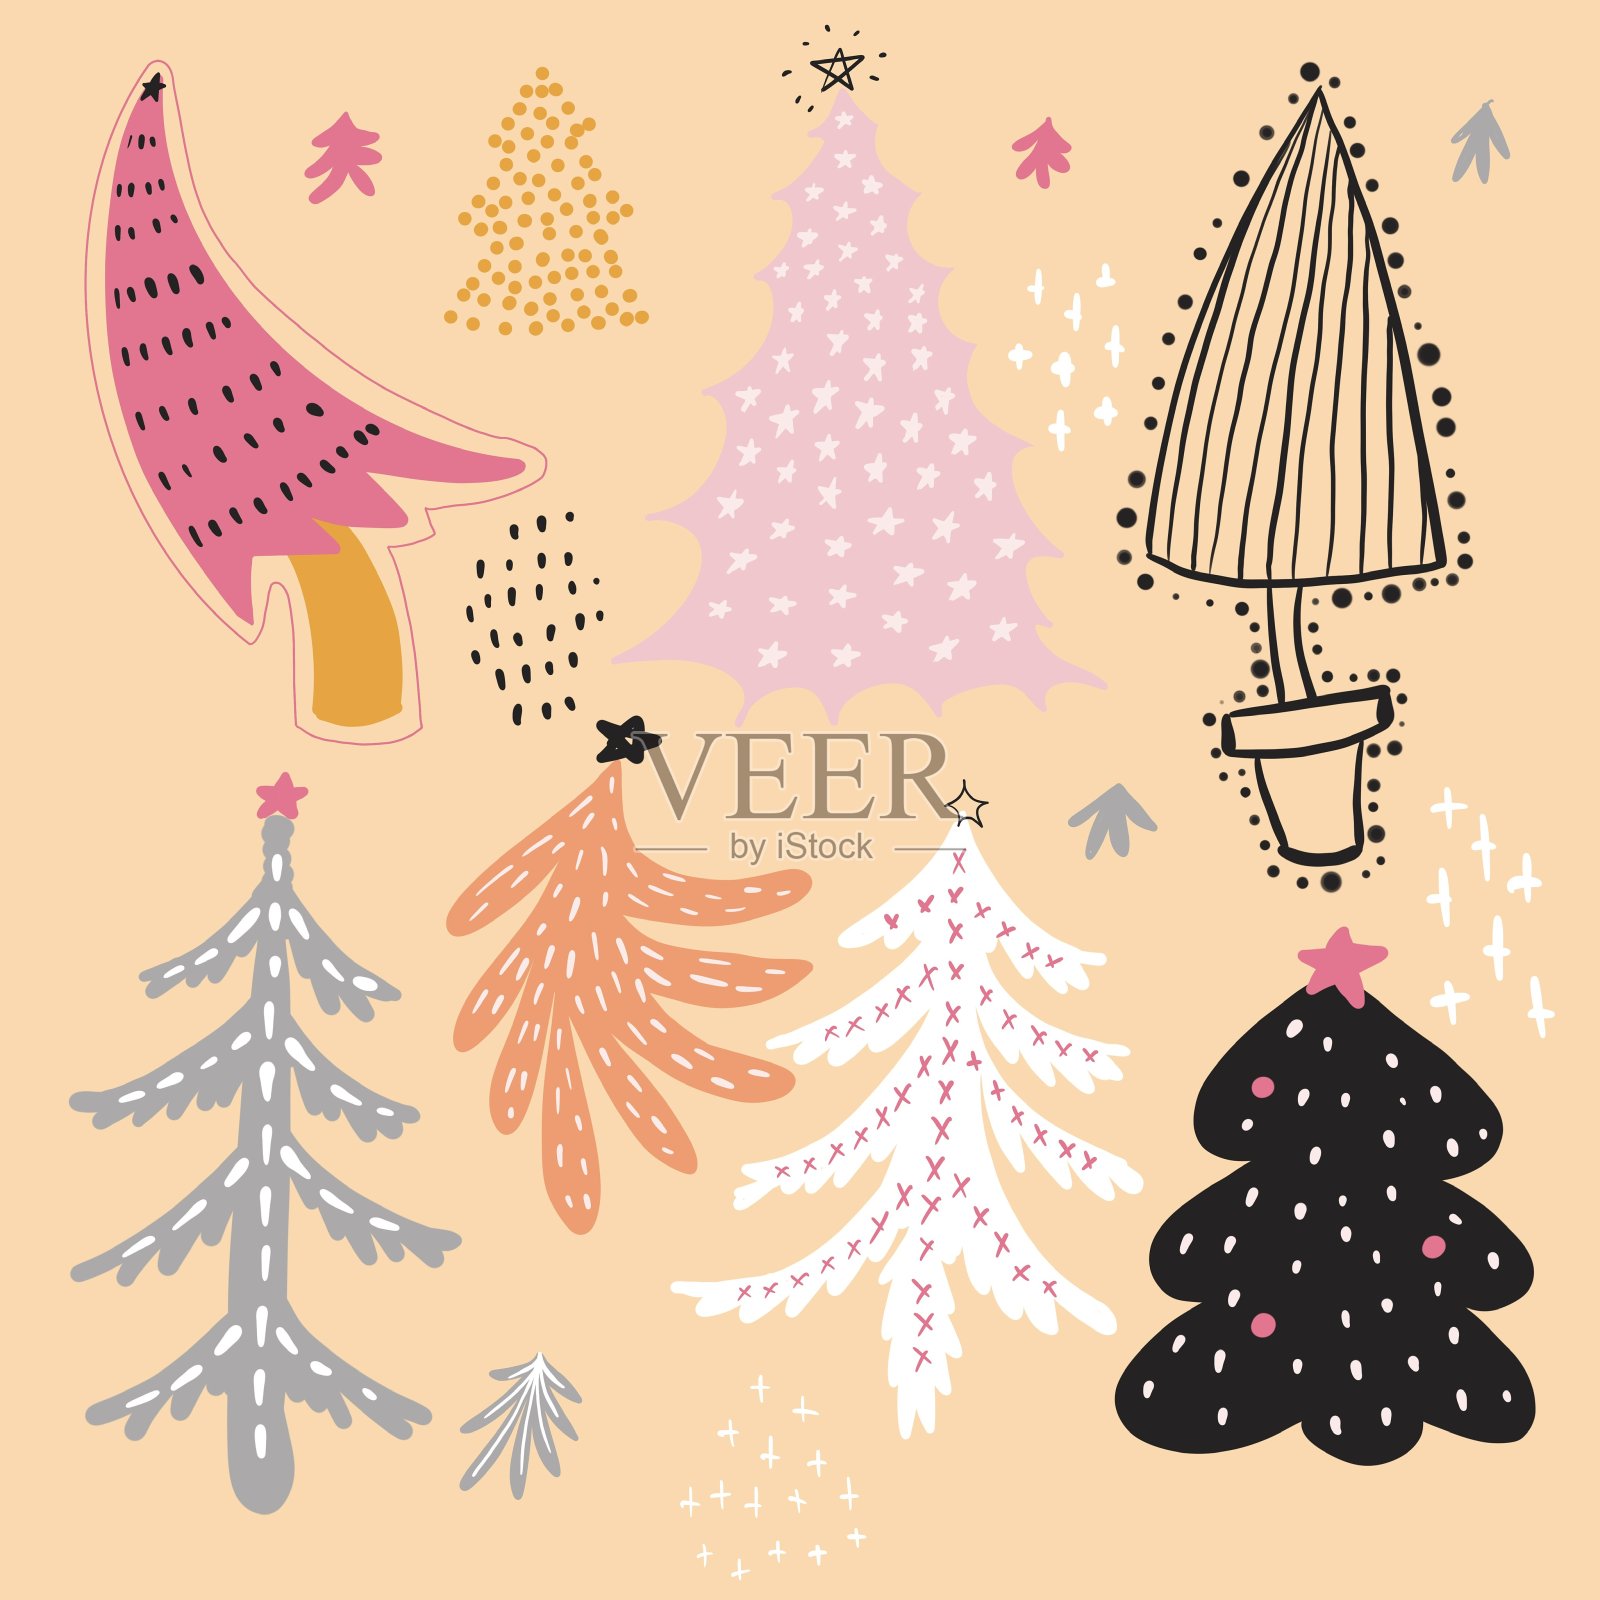 无限图案:圣诞树有灰色、粉色、白色、黄色和橙色。在明亮的桃色背景上。插画图片素材